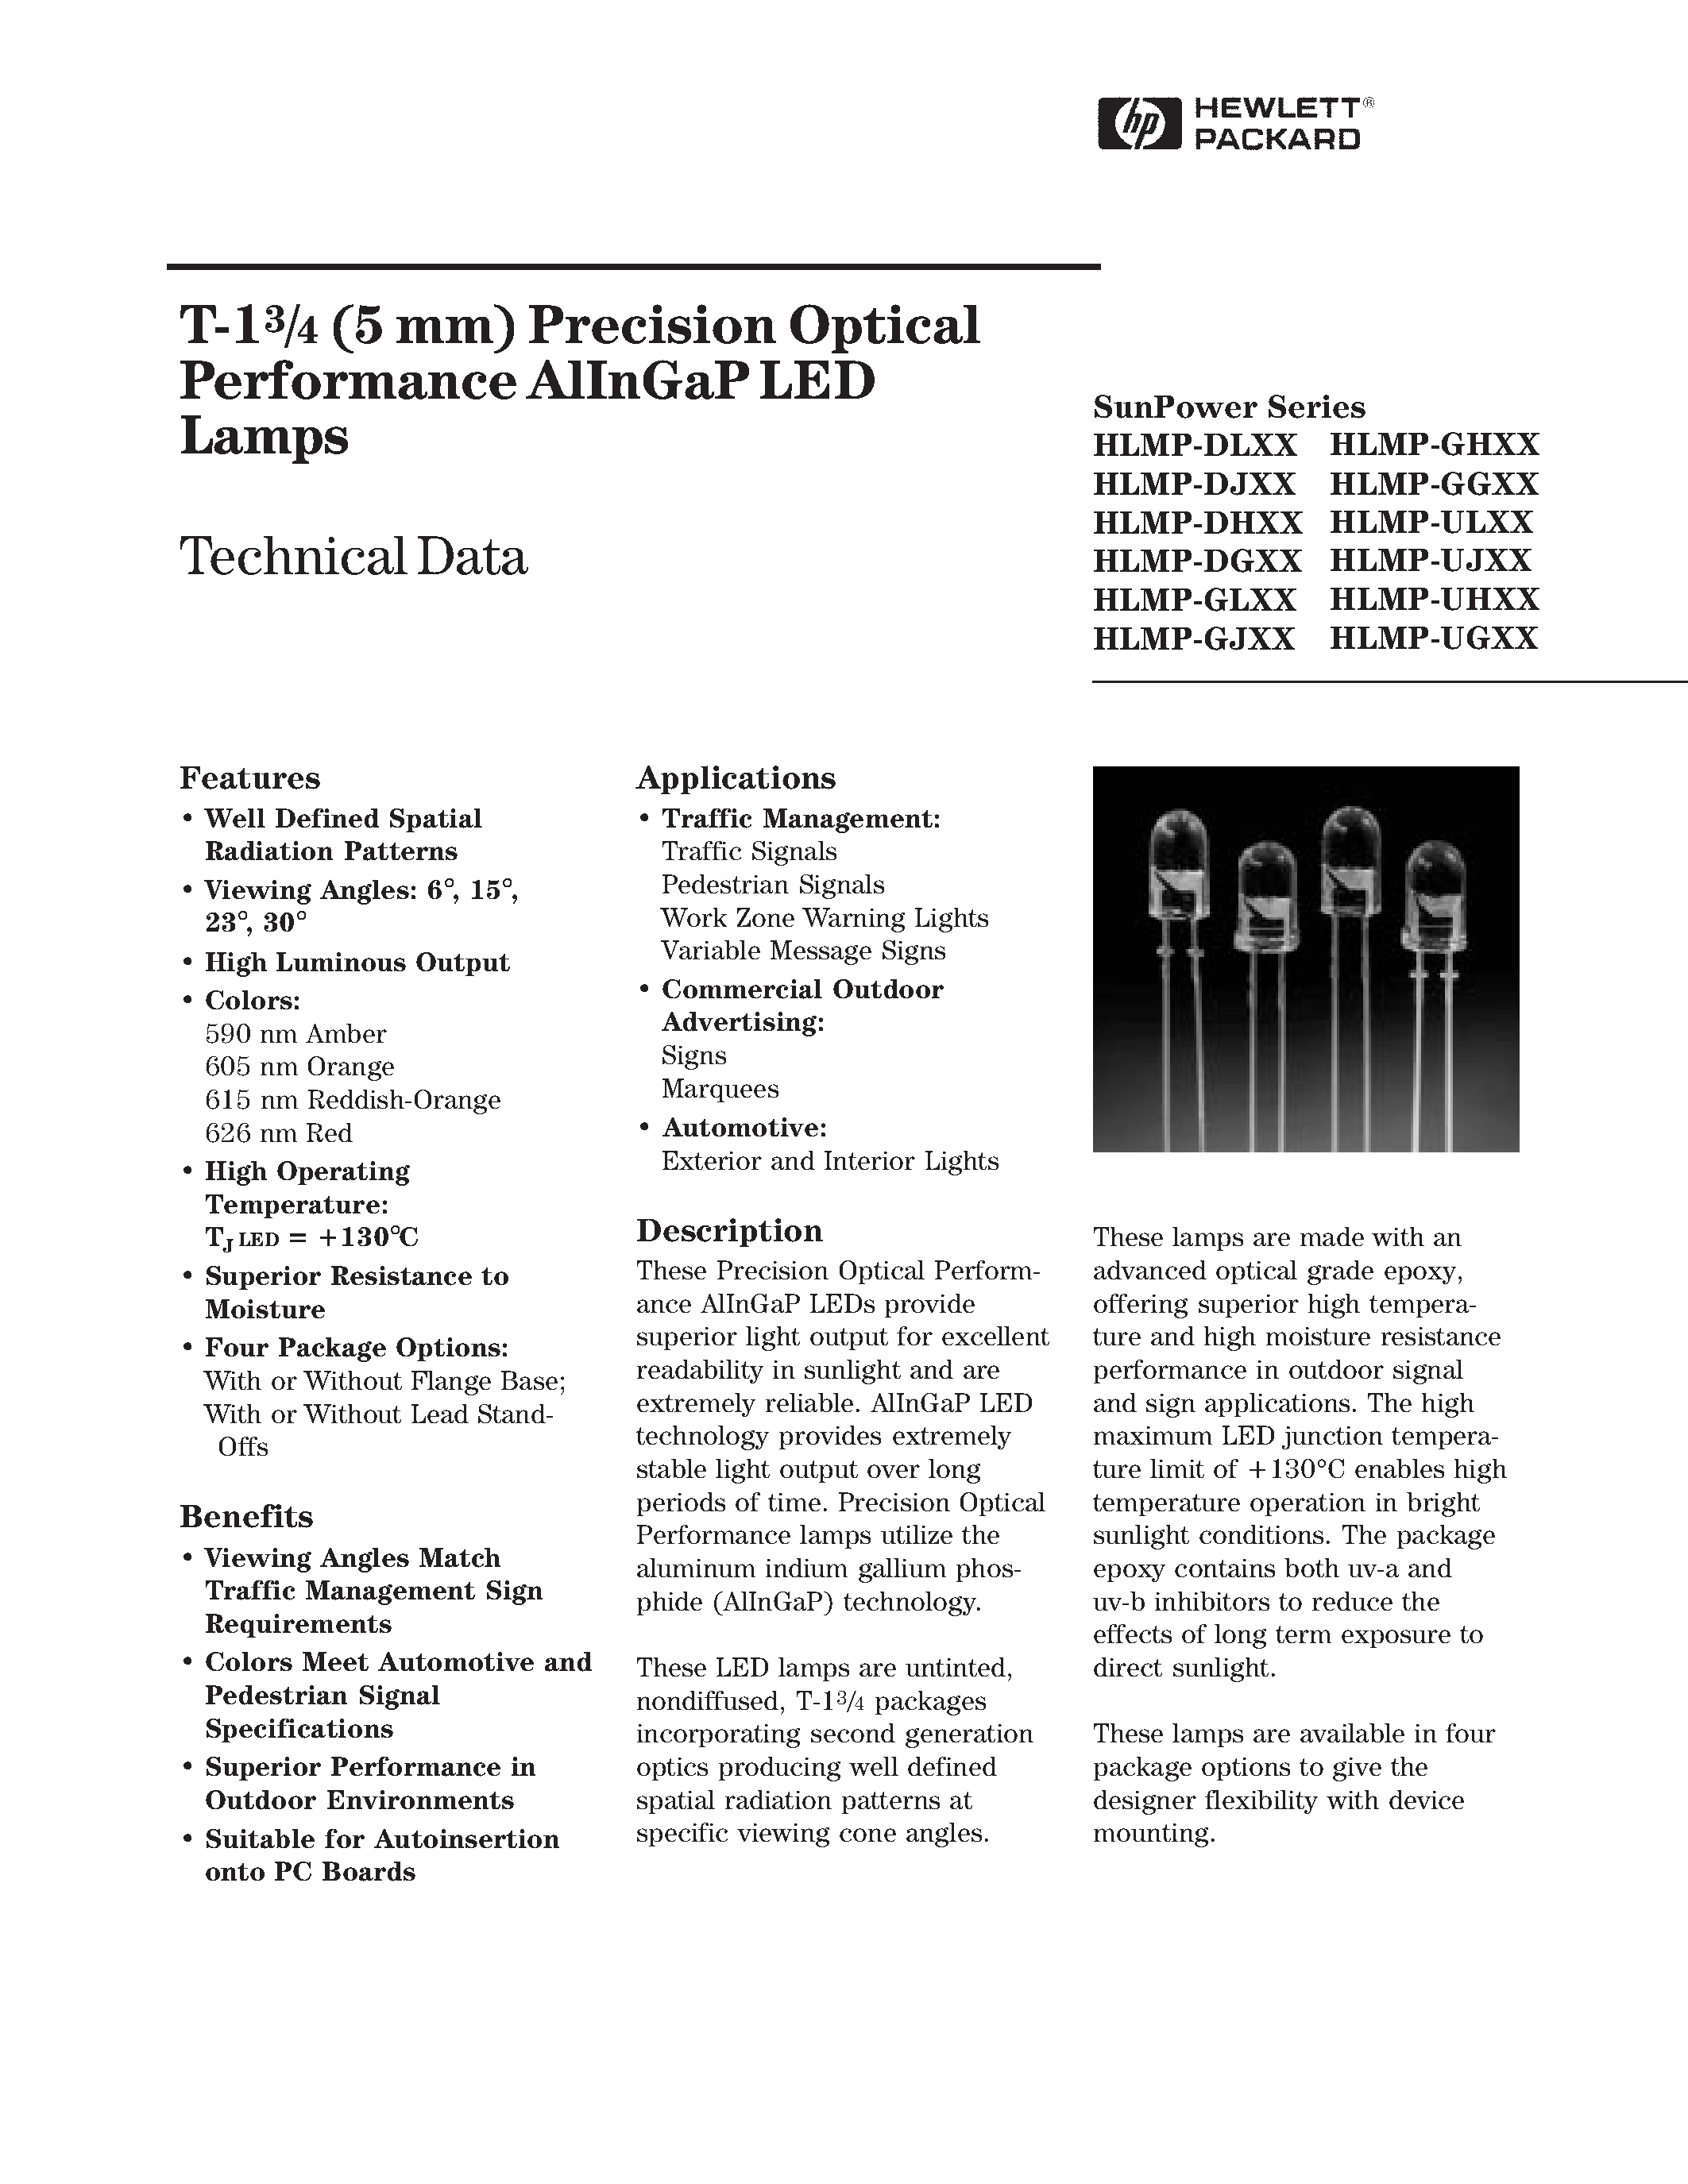 Даташит HLMP-UH06 - T-13/4 (5 mm) Precision Optical Performance AlInGaP LED Lamps страница 1